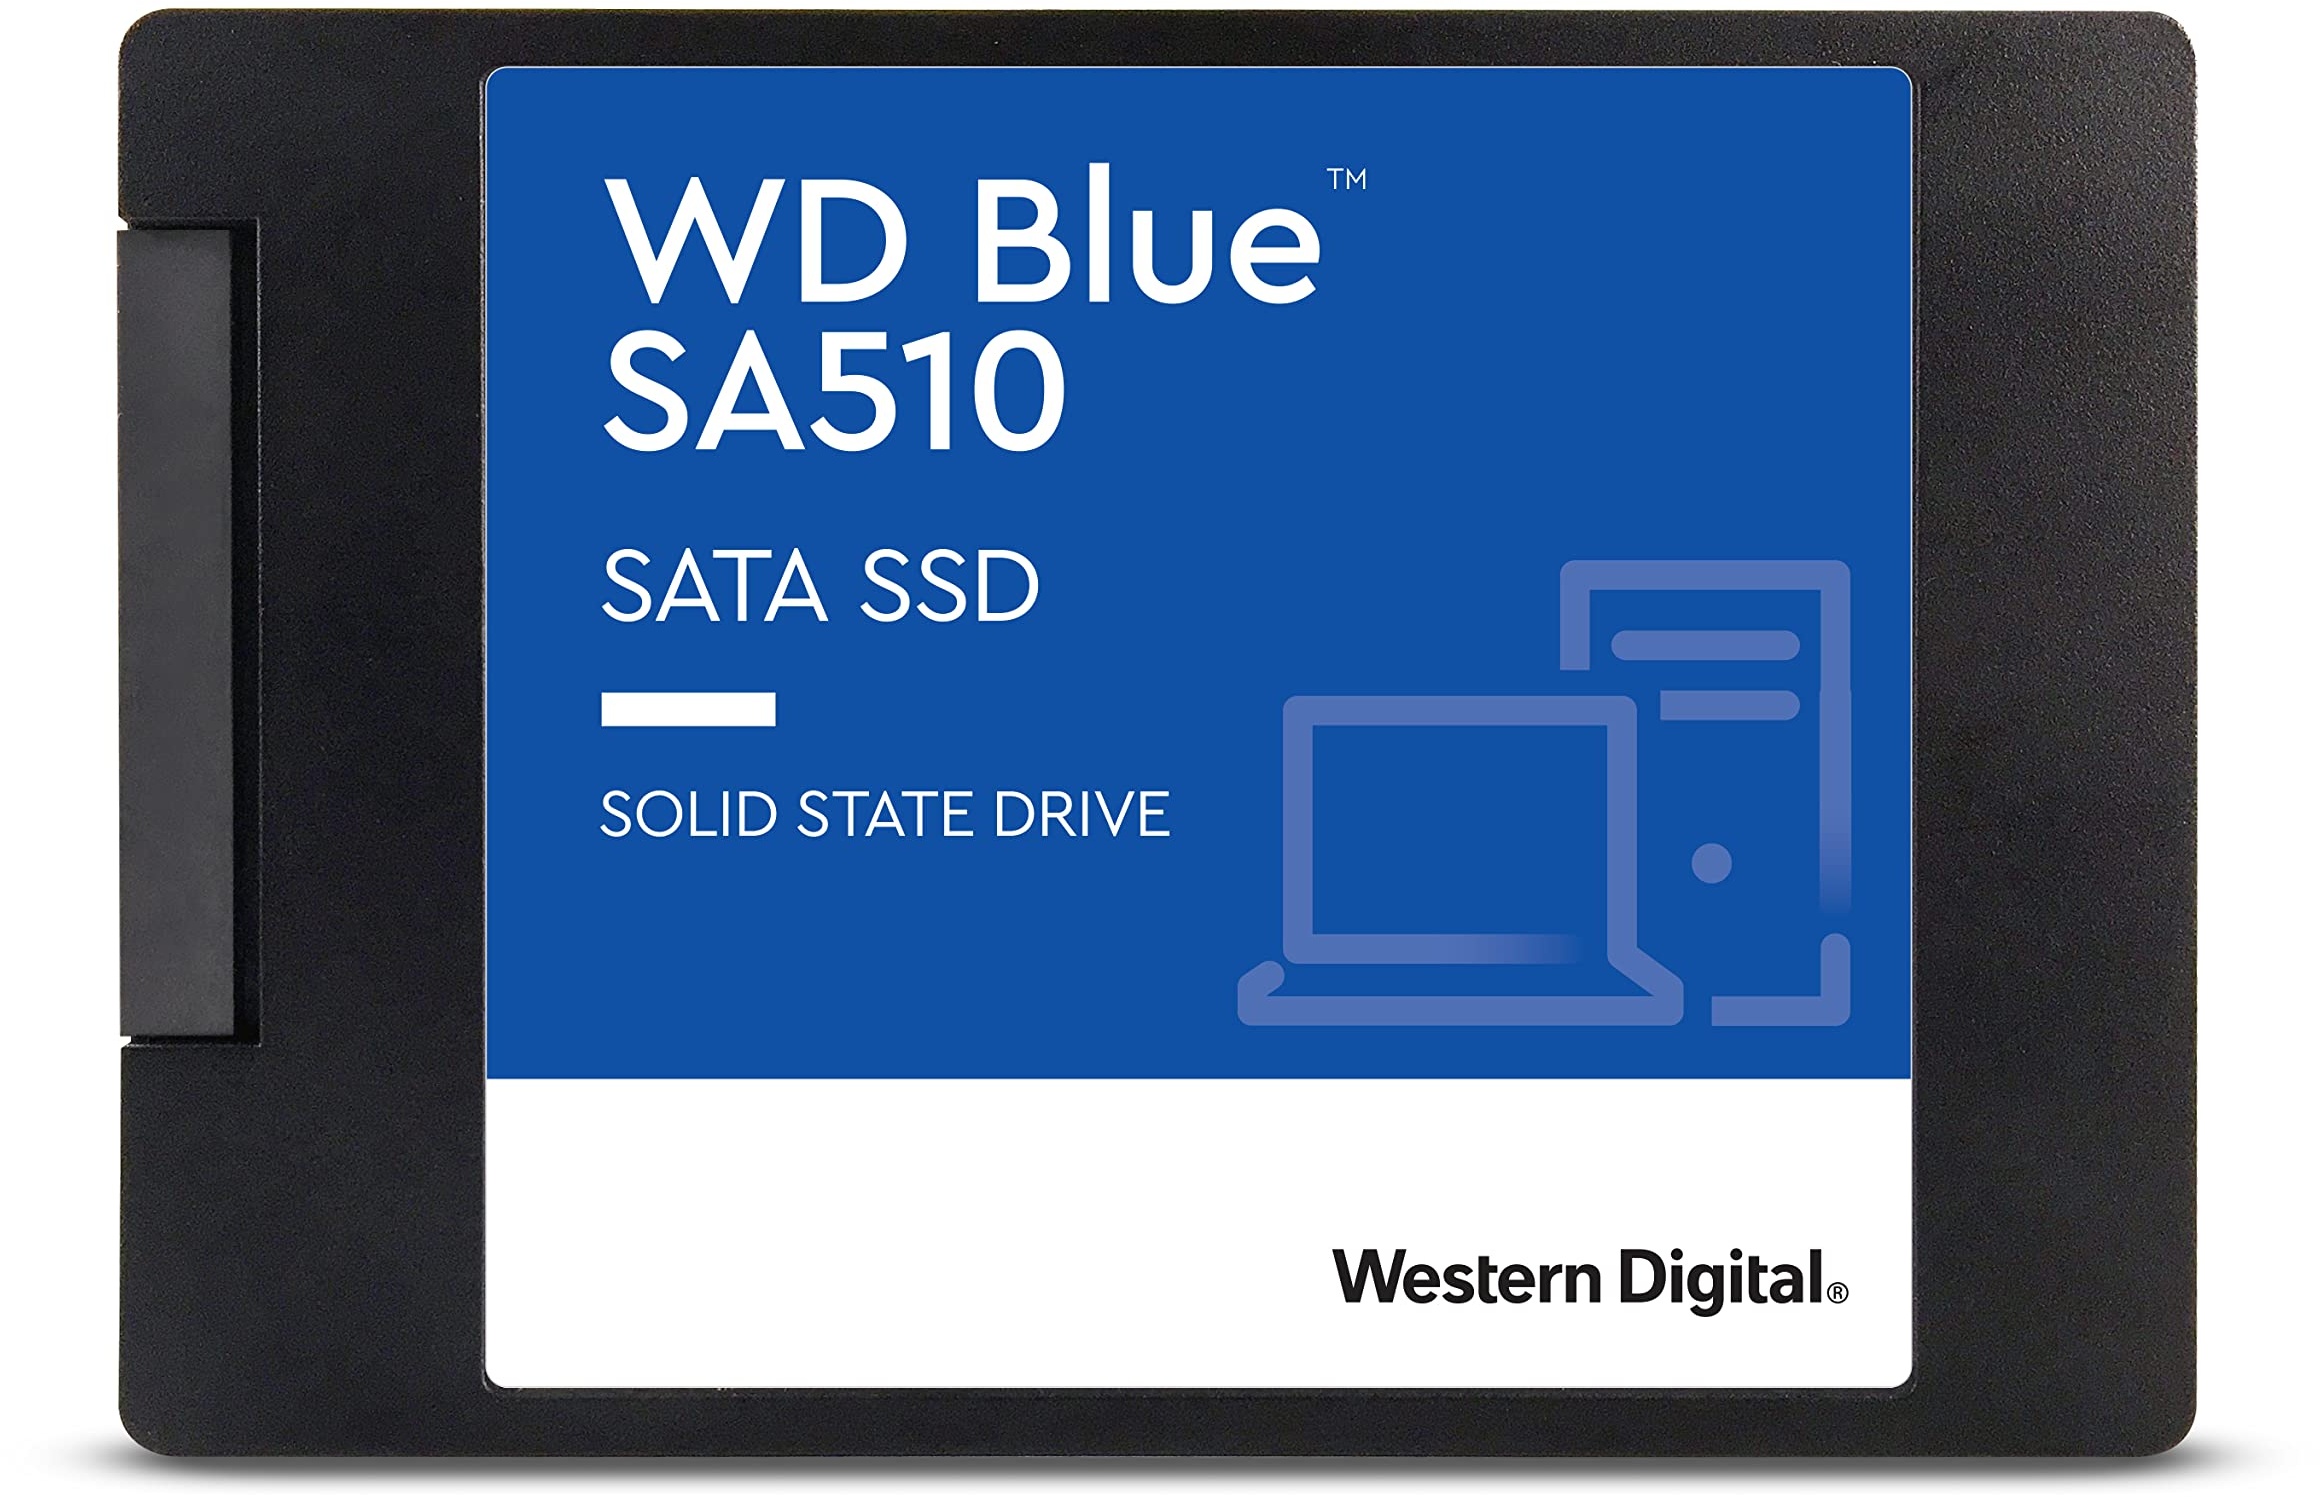 WD Blue SA510 SATA SSD 500 GB 2,5 Zoll (Lesen bis 560 MB/s, Schreiben bis 510 MB/s, Upgrade für PC/Laptop, dreimonatiges Probeabo von Dropbox Professional, Western Digital SSD Dashboard)